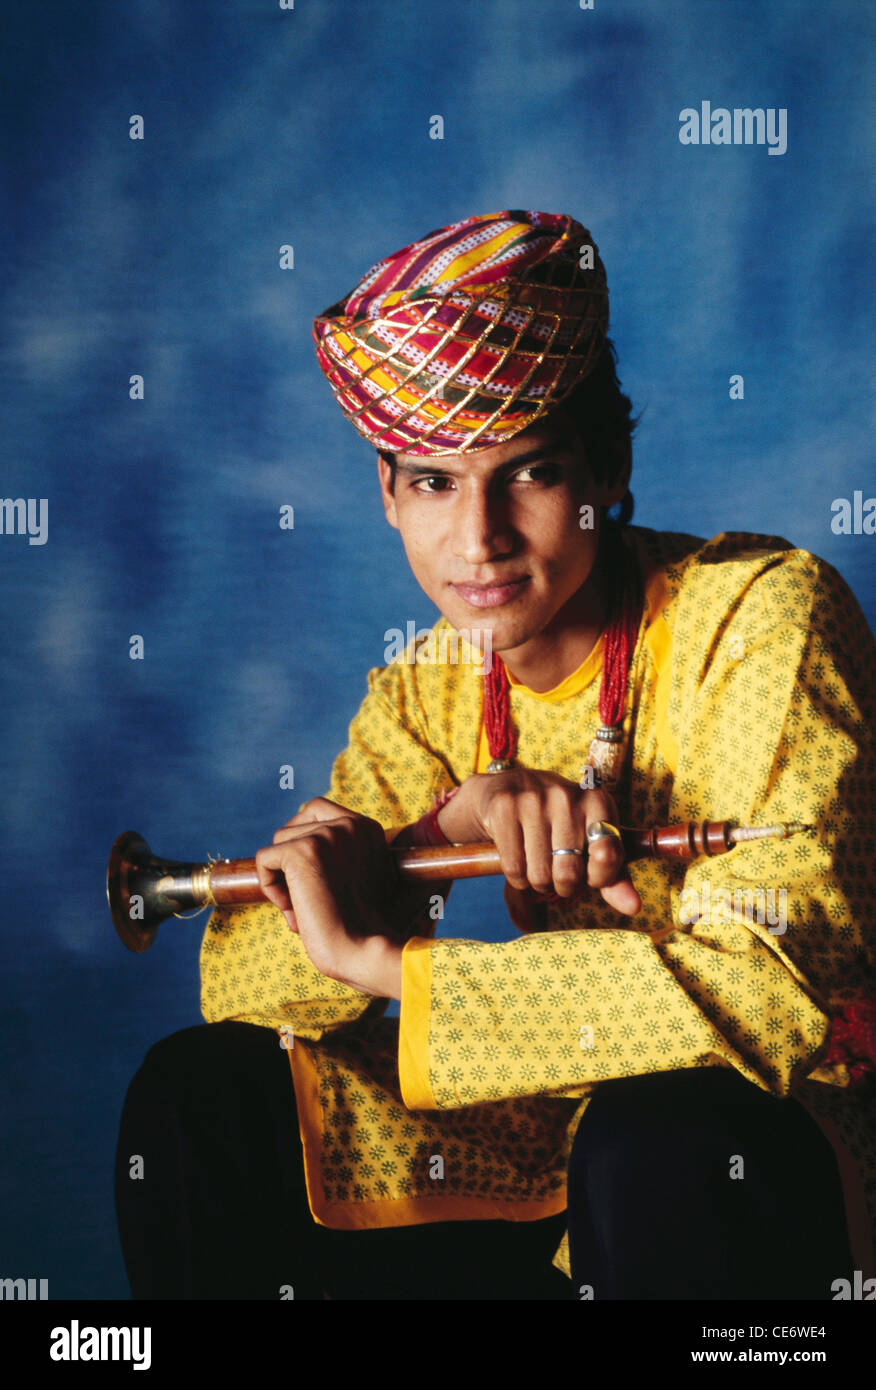 BDR 83387 : portrait de musicien folklorique du Rajasthan indien posant avec un instrument de musique à vent shehnai rajasthan Inde M.# 657A Banque D'Images